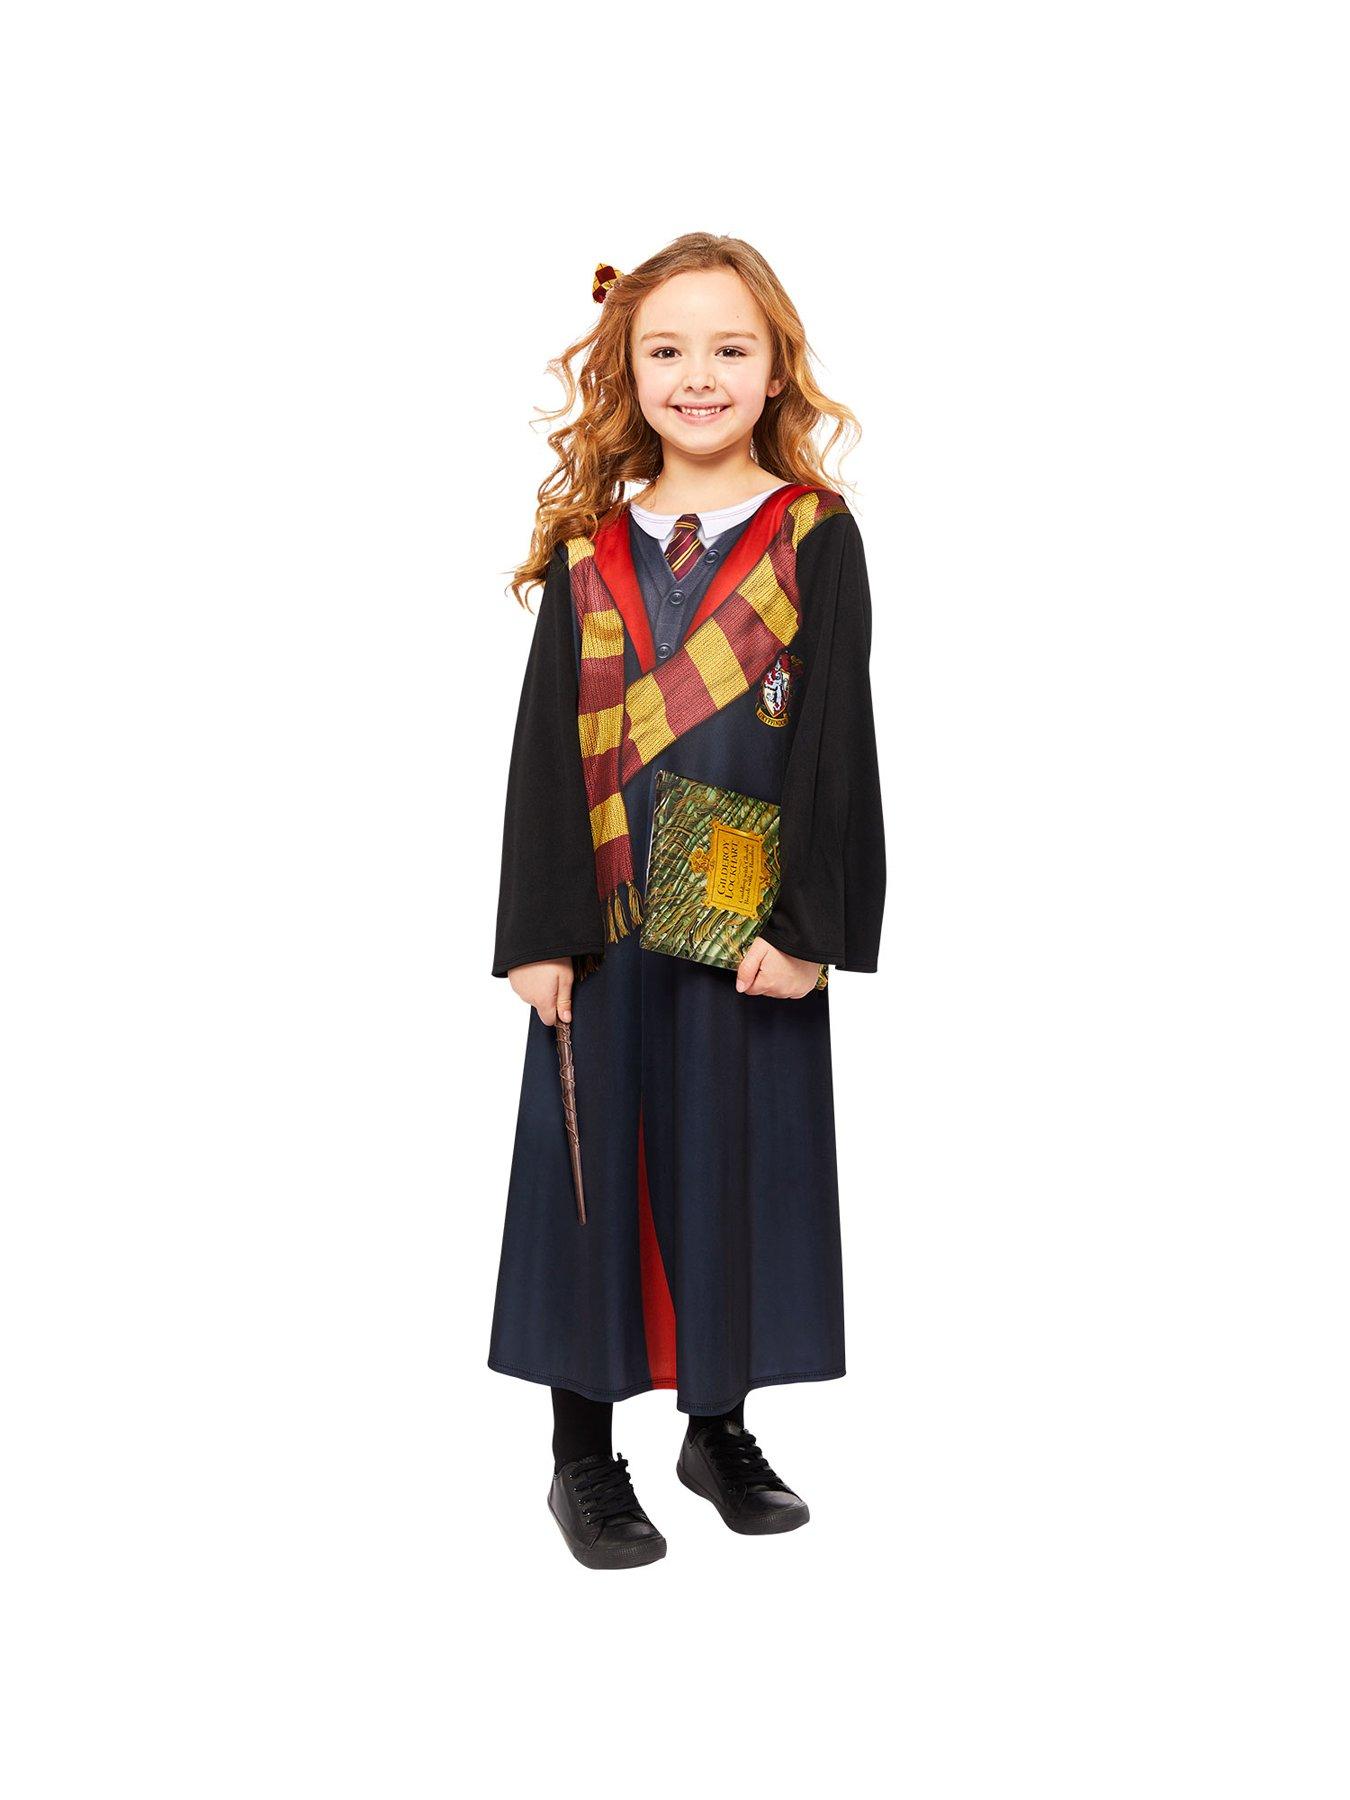 Shop Harry Potter Deluxe School Robe Kids' Costume (Medium) Online